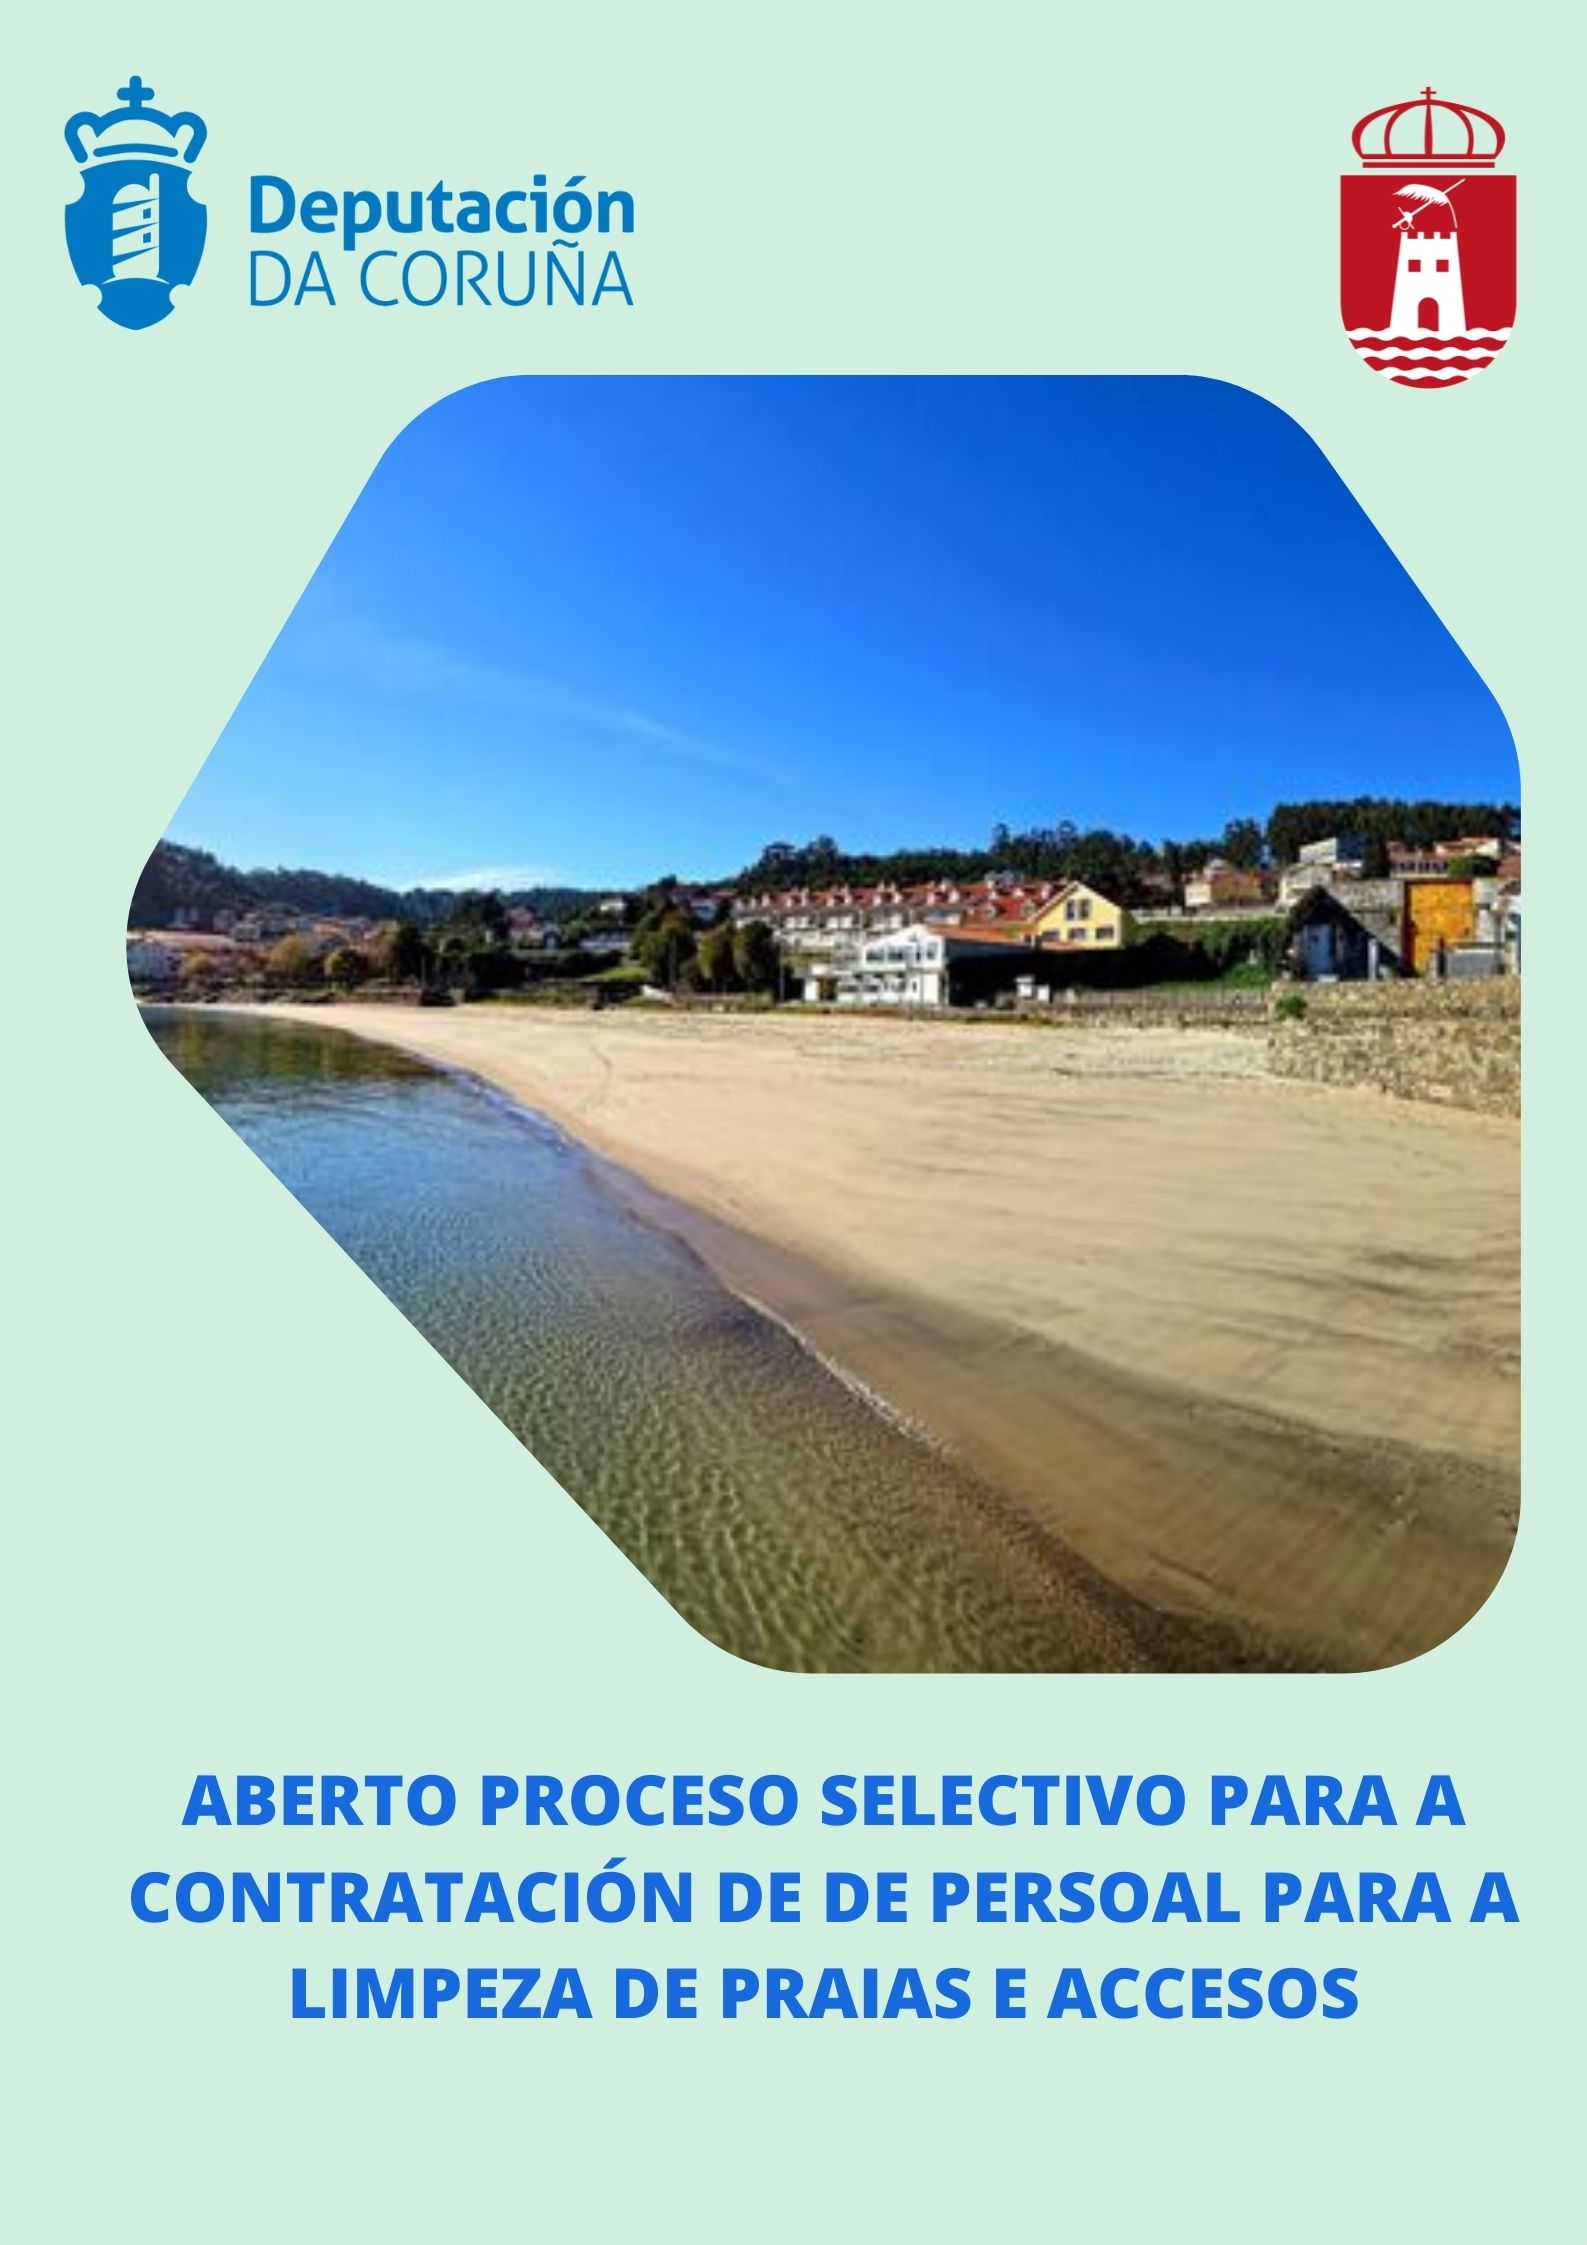 Aberto proceso selectivo para a contratación de persoal para a limpeza de praias e accesos